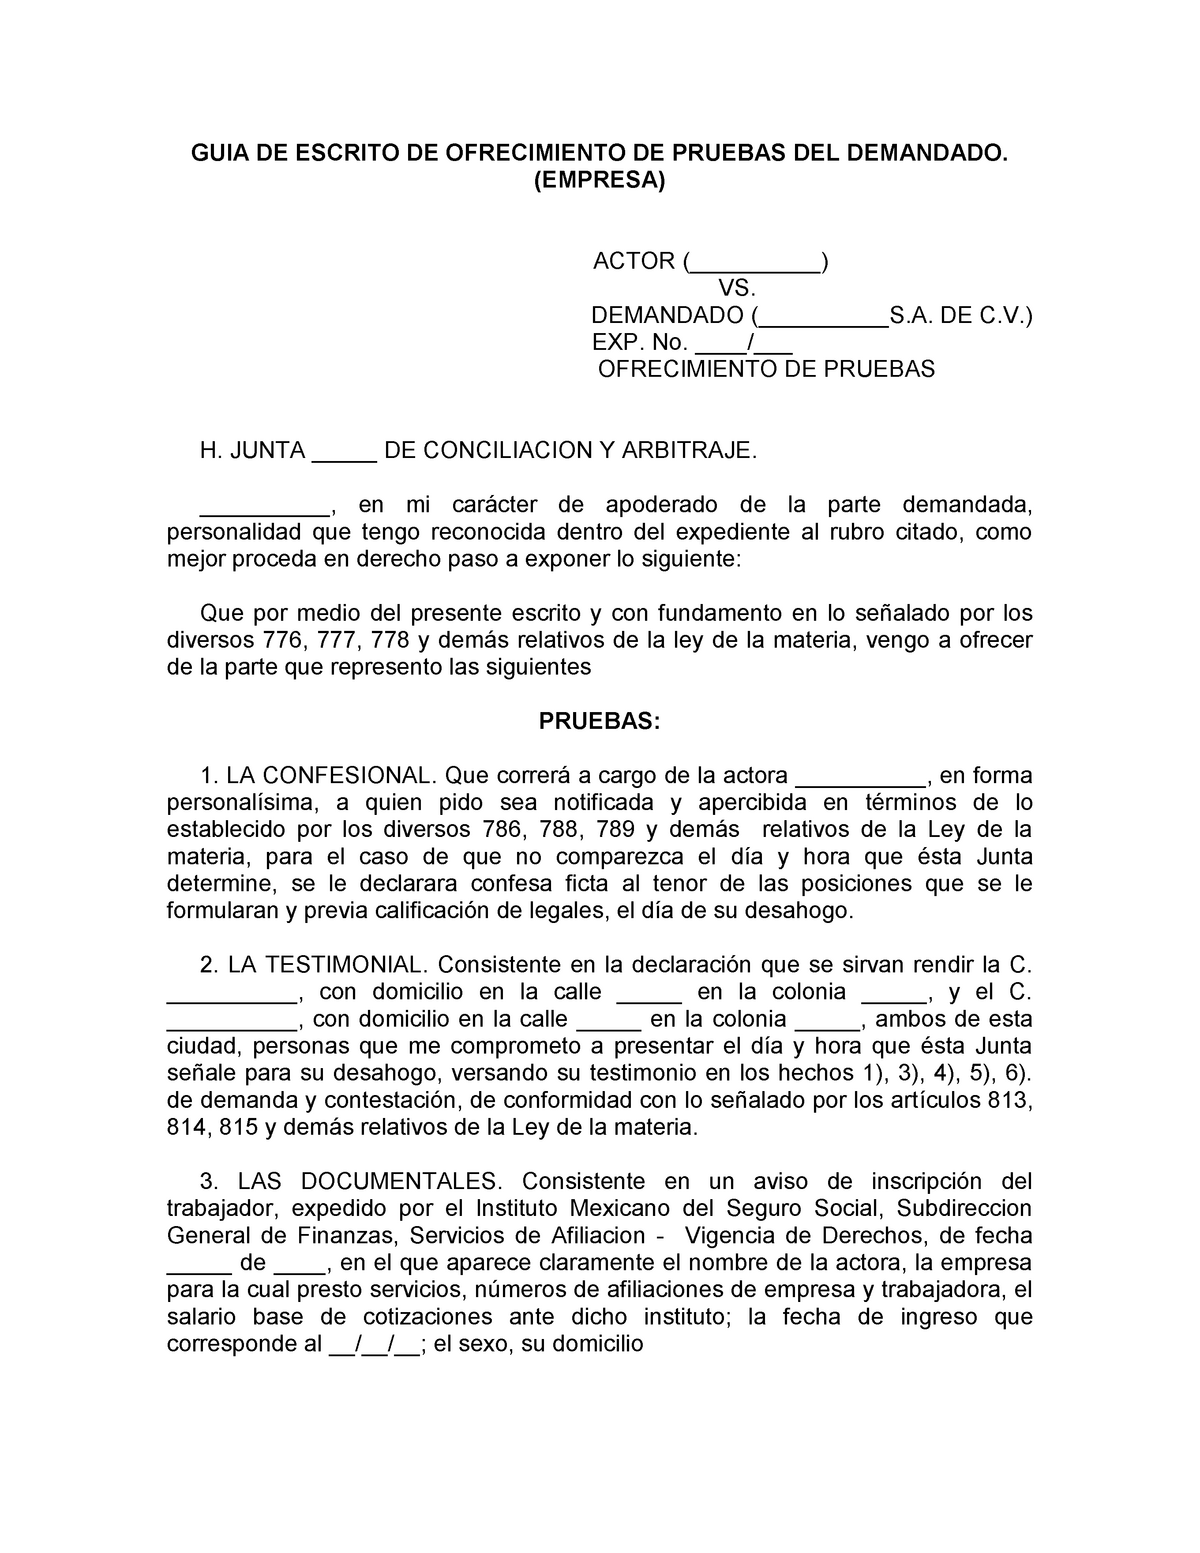 Guia de escrito de ofrecimiento de pruebas del demandado - GUIA DE ESCRITO  DE OFRECIMIENTO DE - Studocu